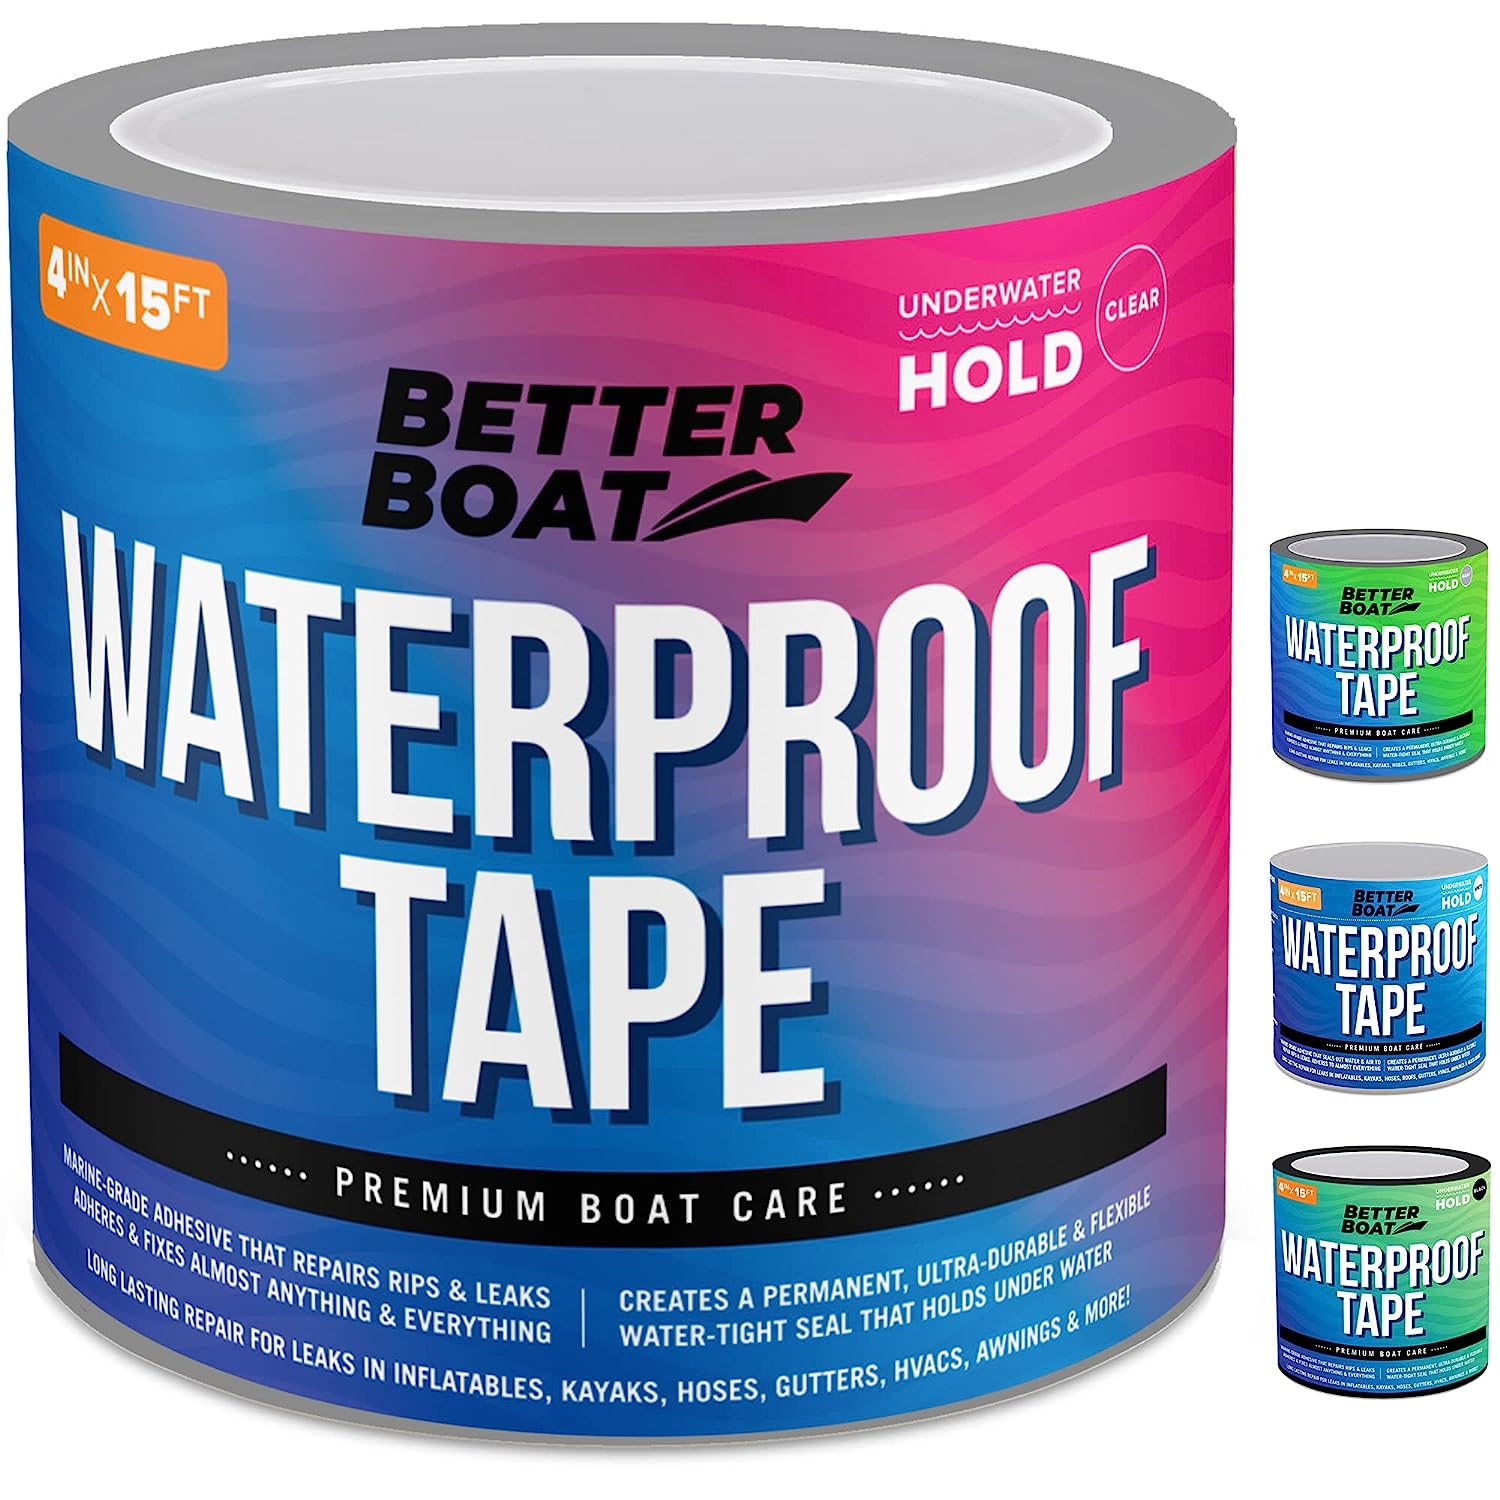 Clear Waterproof Tape for Leaks Thick Heavy Duty Water [...]